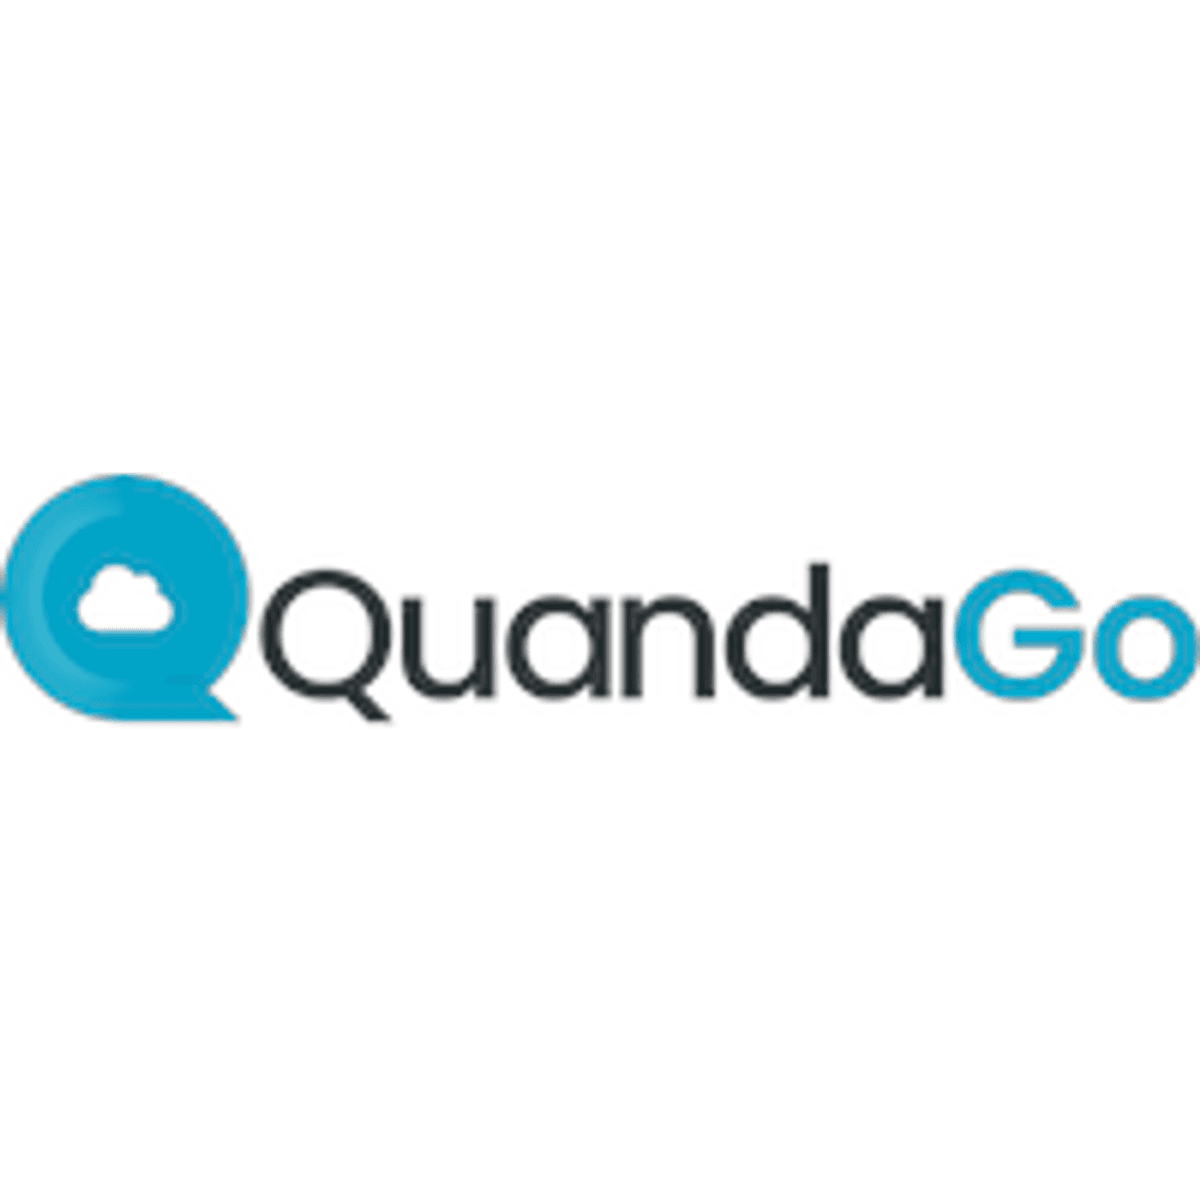 QuandaGo Connected Experience Platform combineert contactcenter, kennismanagement en automatisering image